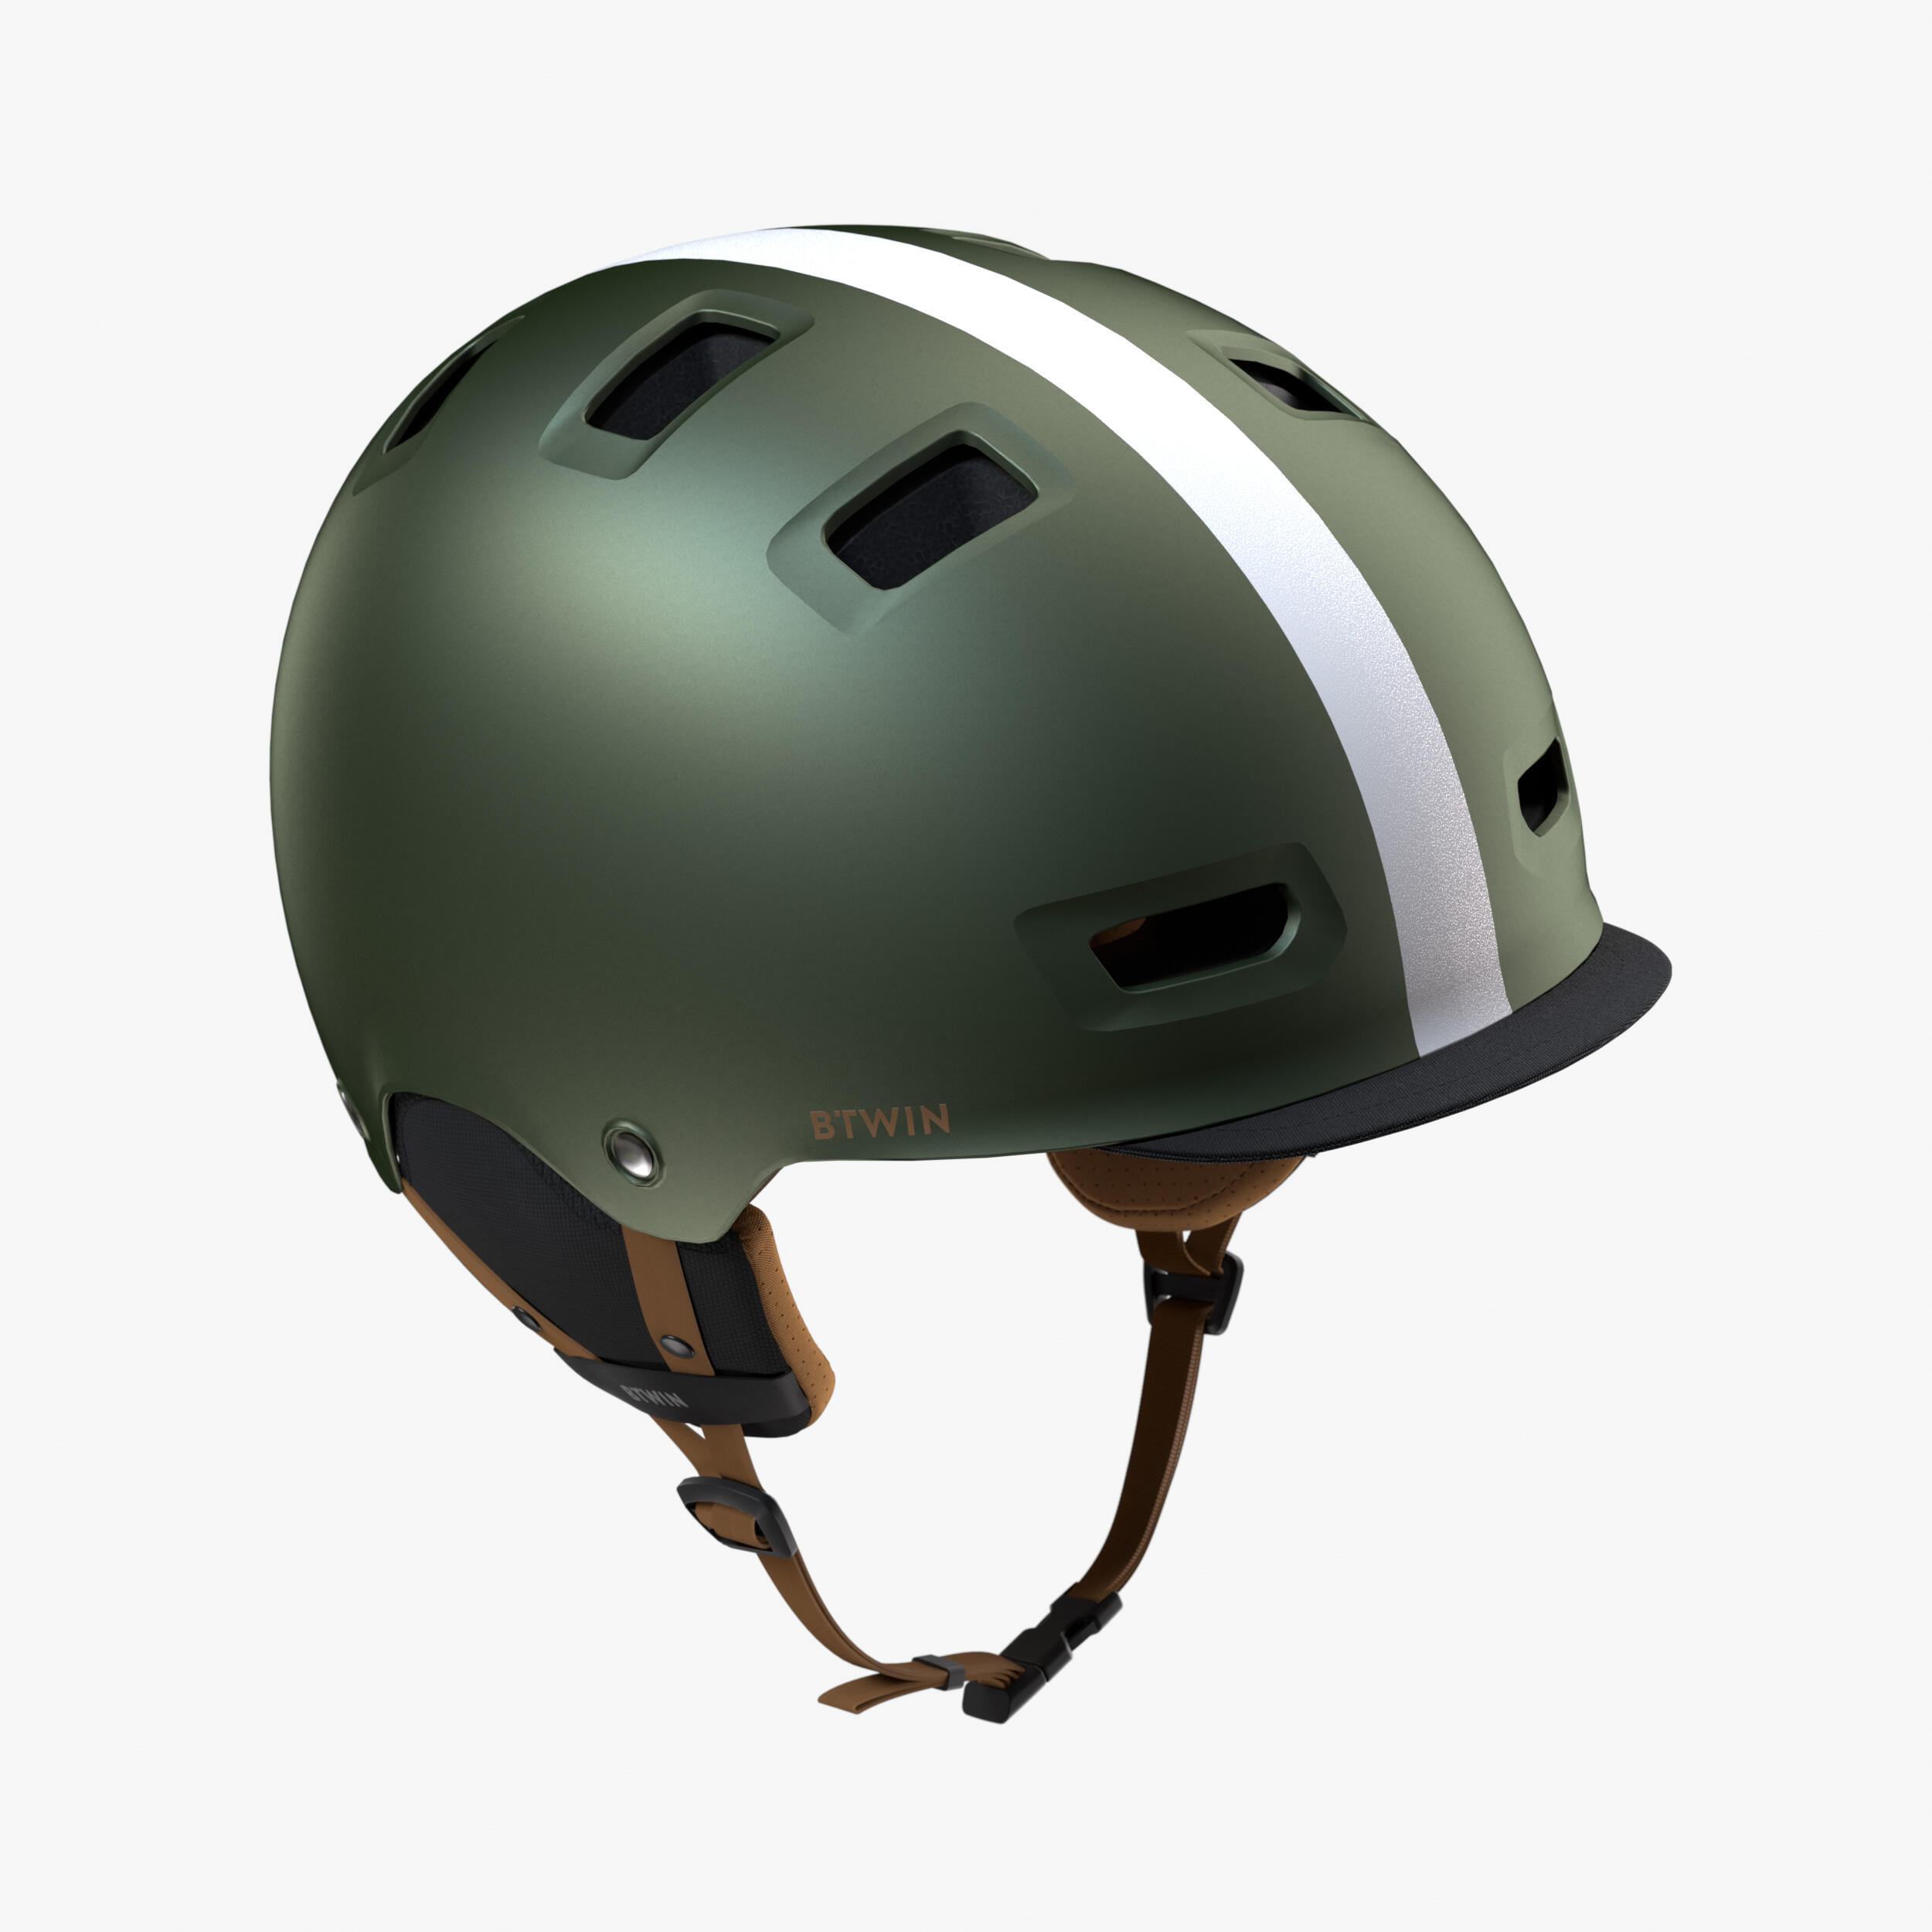 City Cycling Bowl Helmet 540 - Khaki 1/10